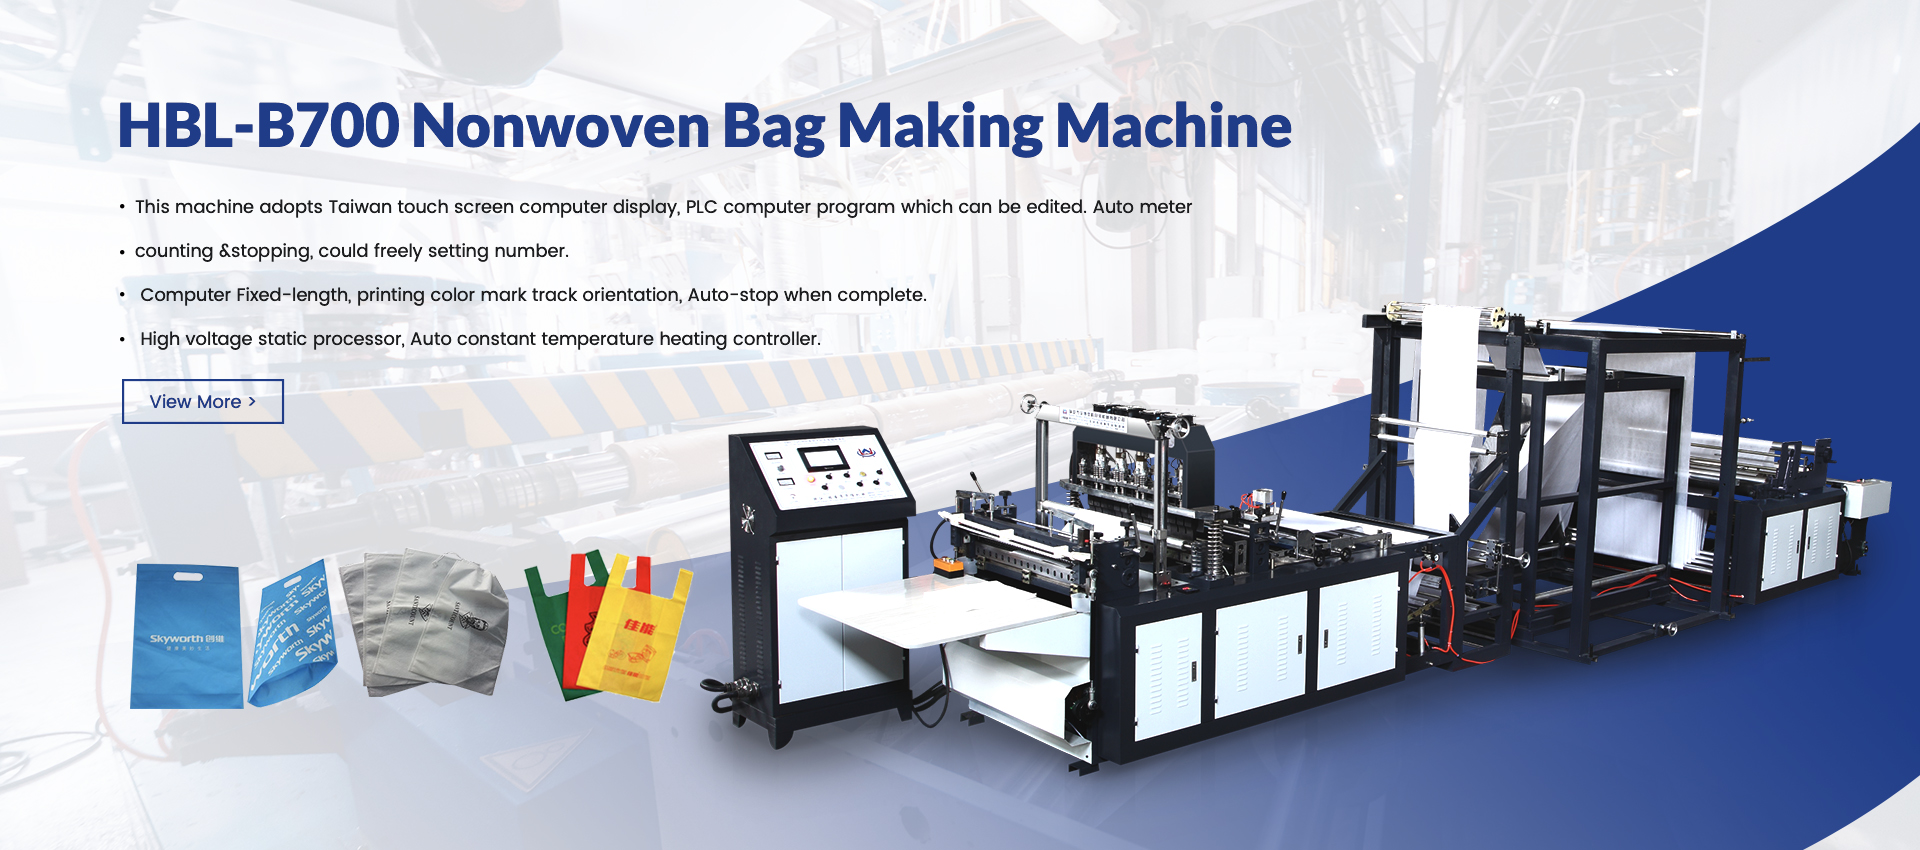 Nonwoven bag making machine supplier